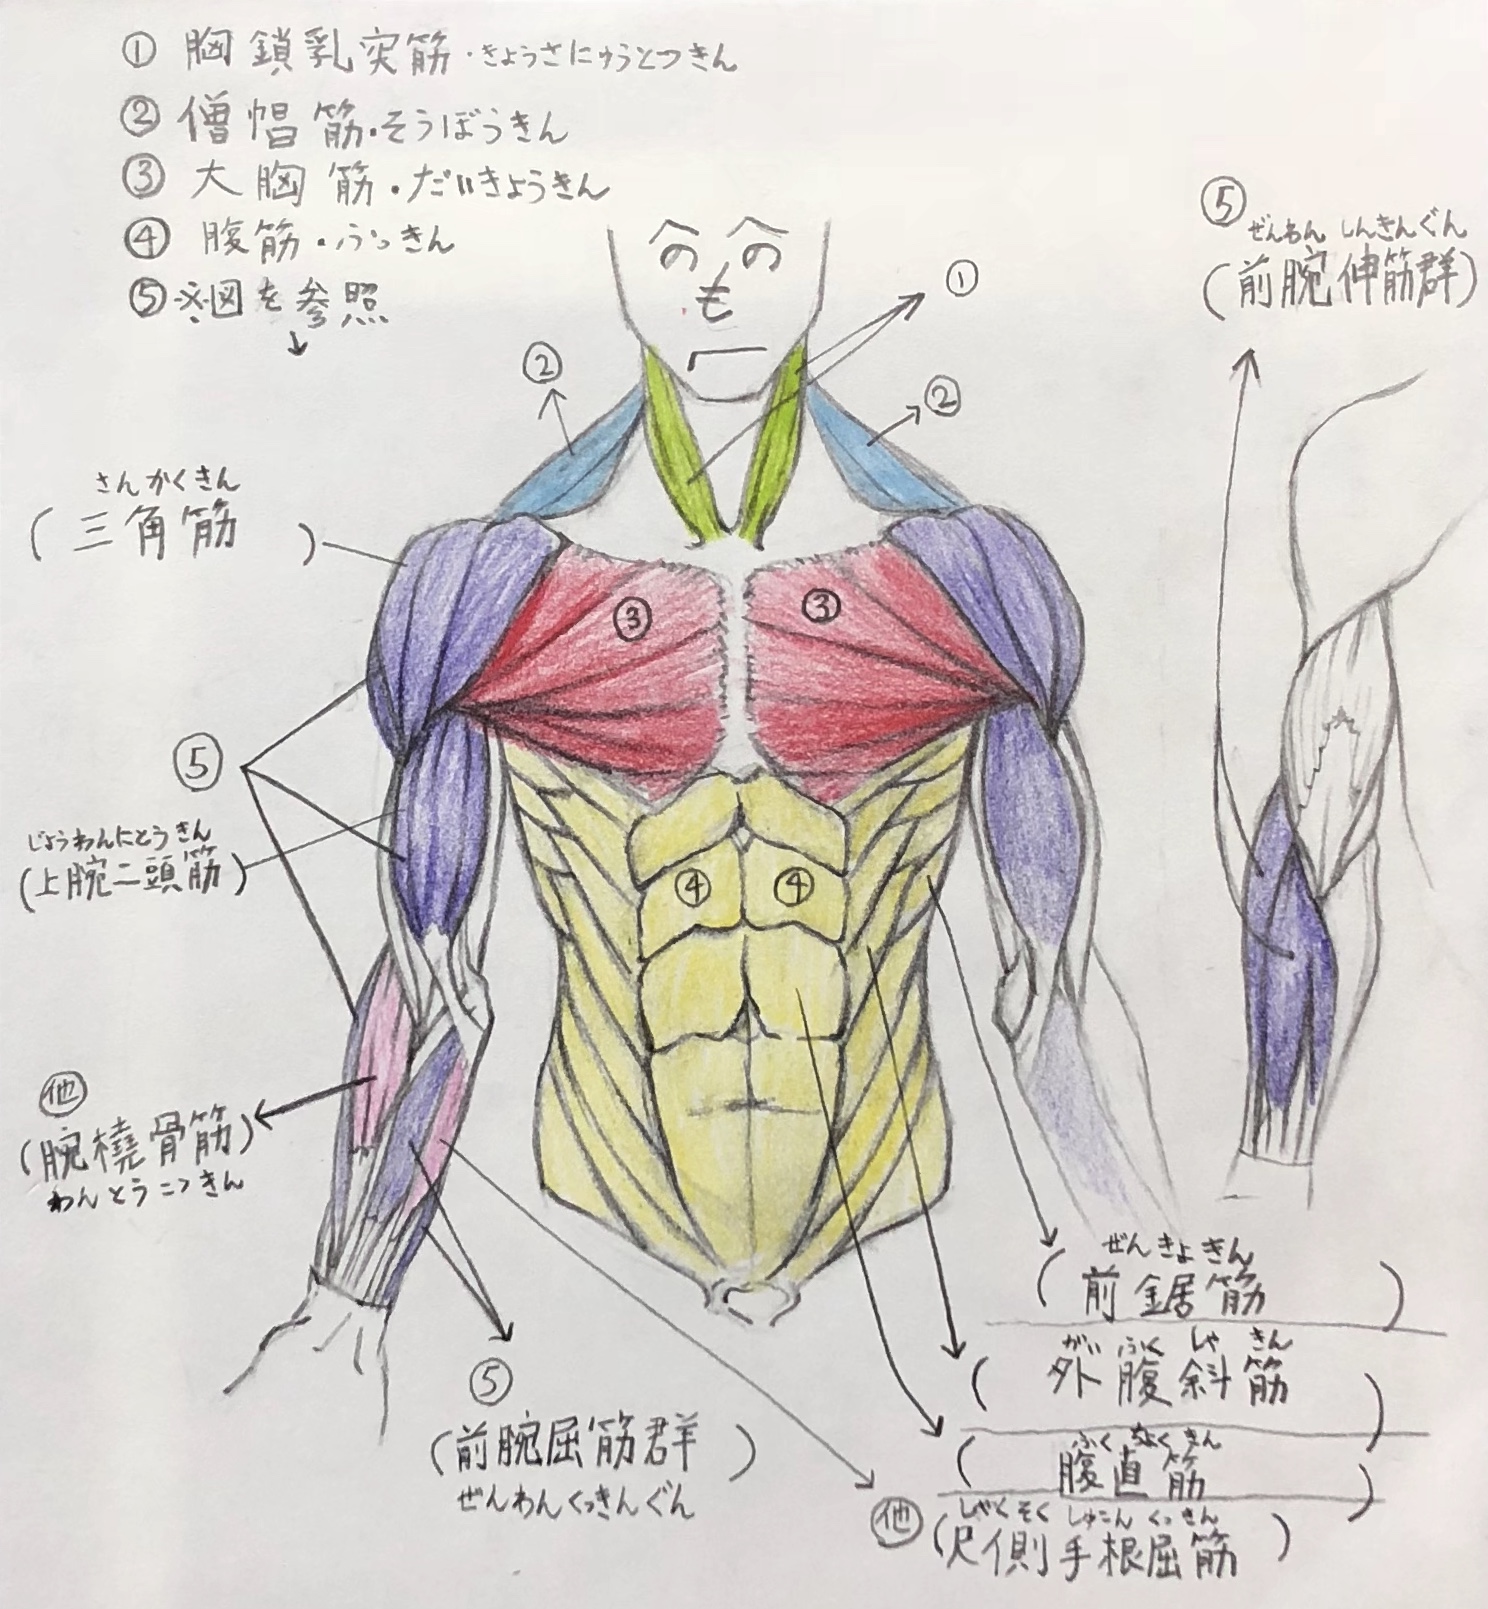 画家が解説 上半身の筋肉の描き方 ここを抑えれば大丈夫 前身編 絵画デッサン屋 Houichi美術絵描き研究所